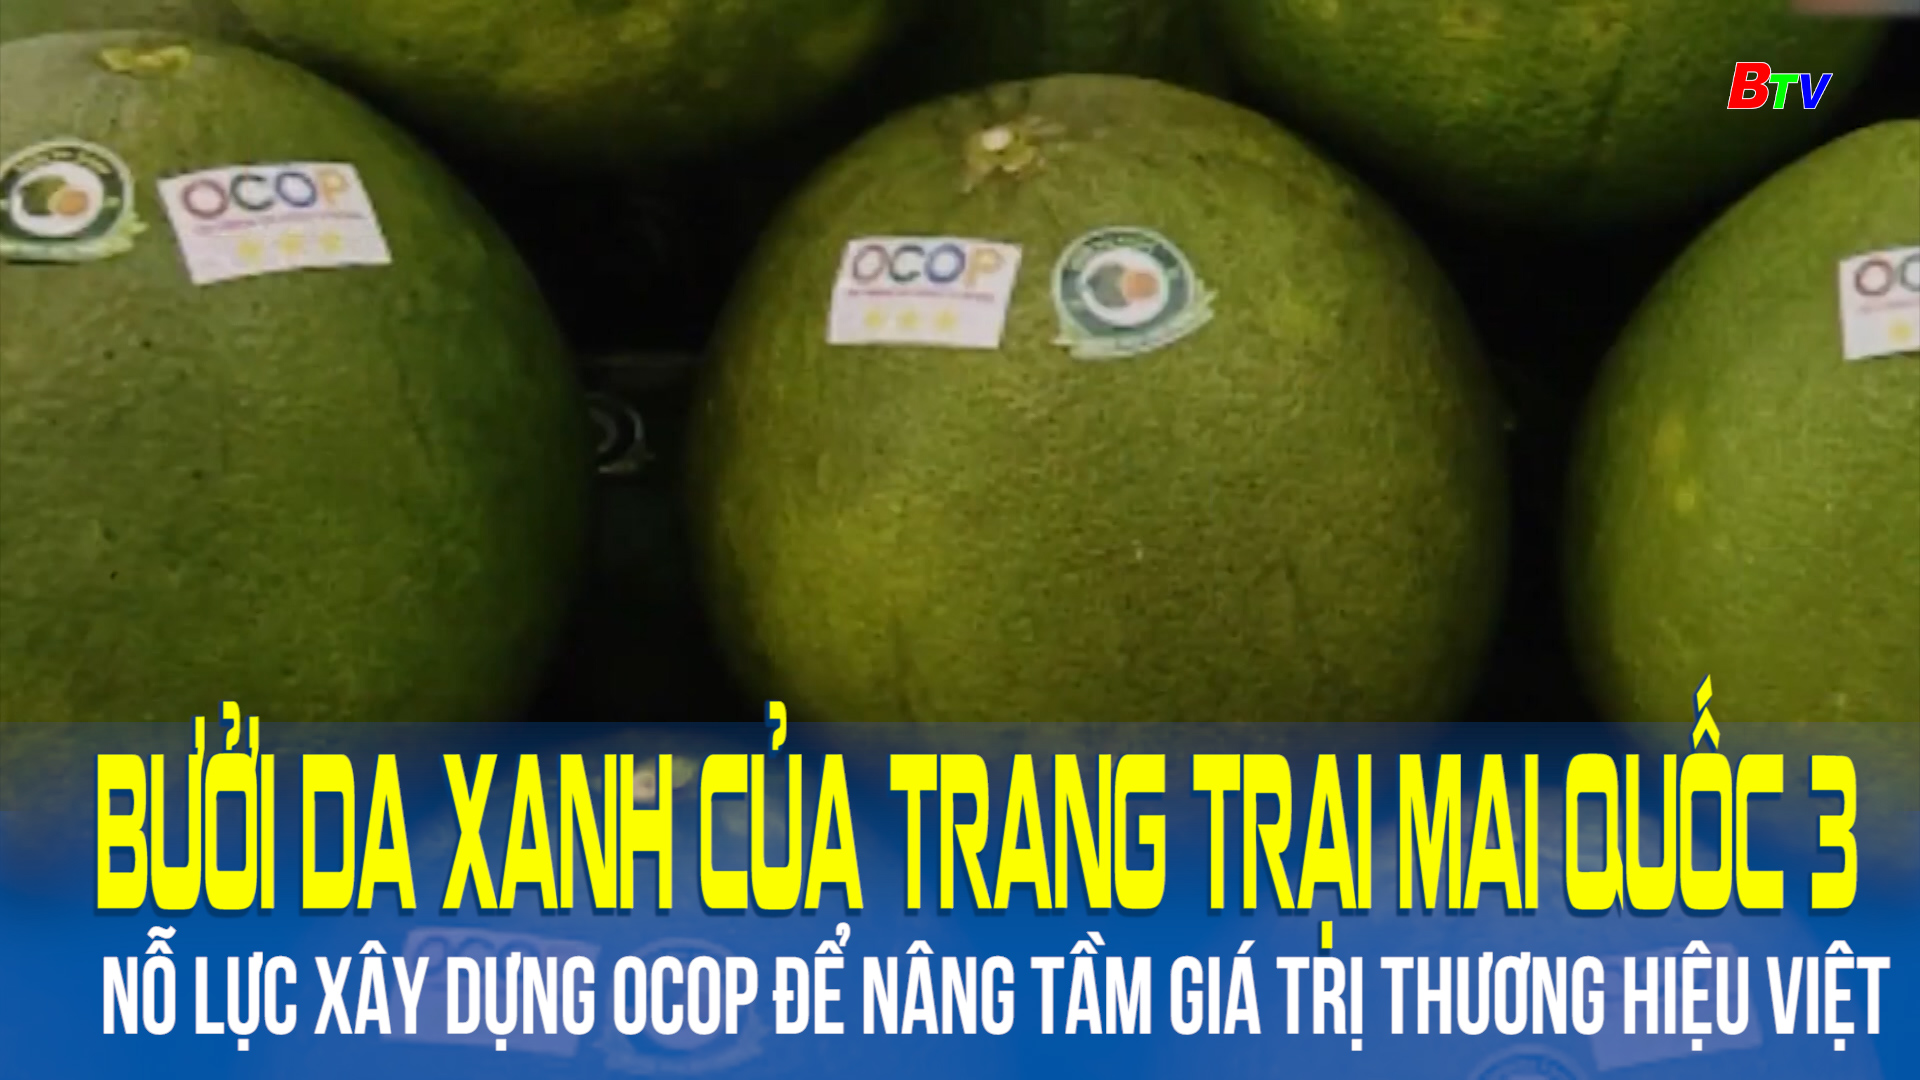 Bưởi da xanh của trang trại Mai Quốc 3 nỗ lực xây dựng OCOP để nâng tầm giá trị thương hiệu Việt